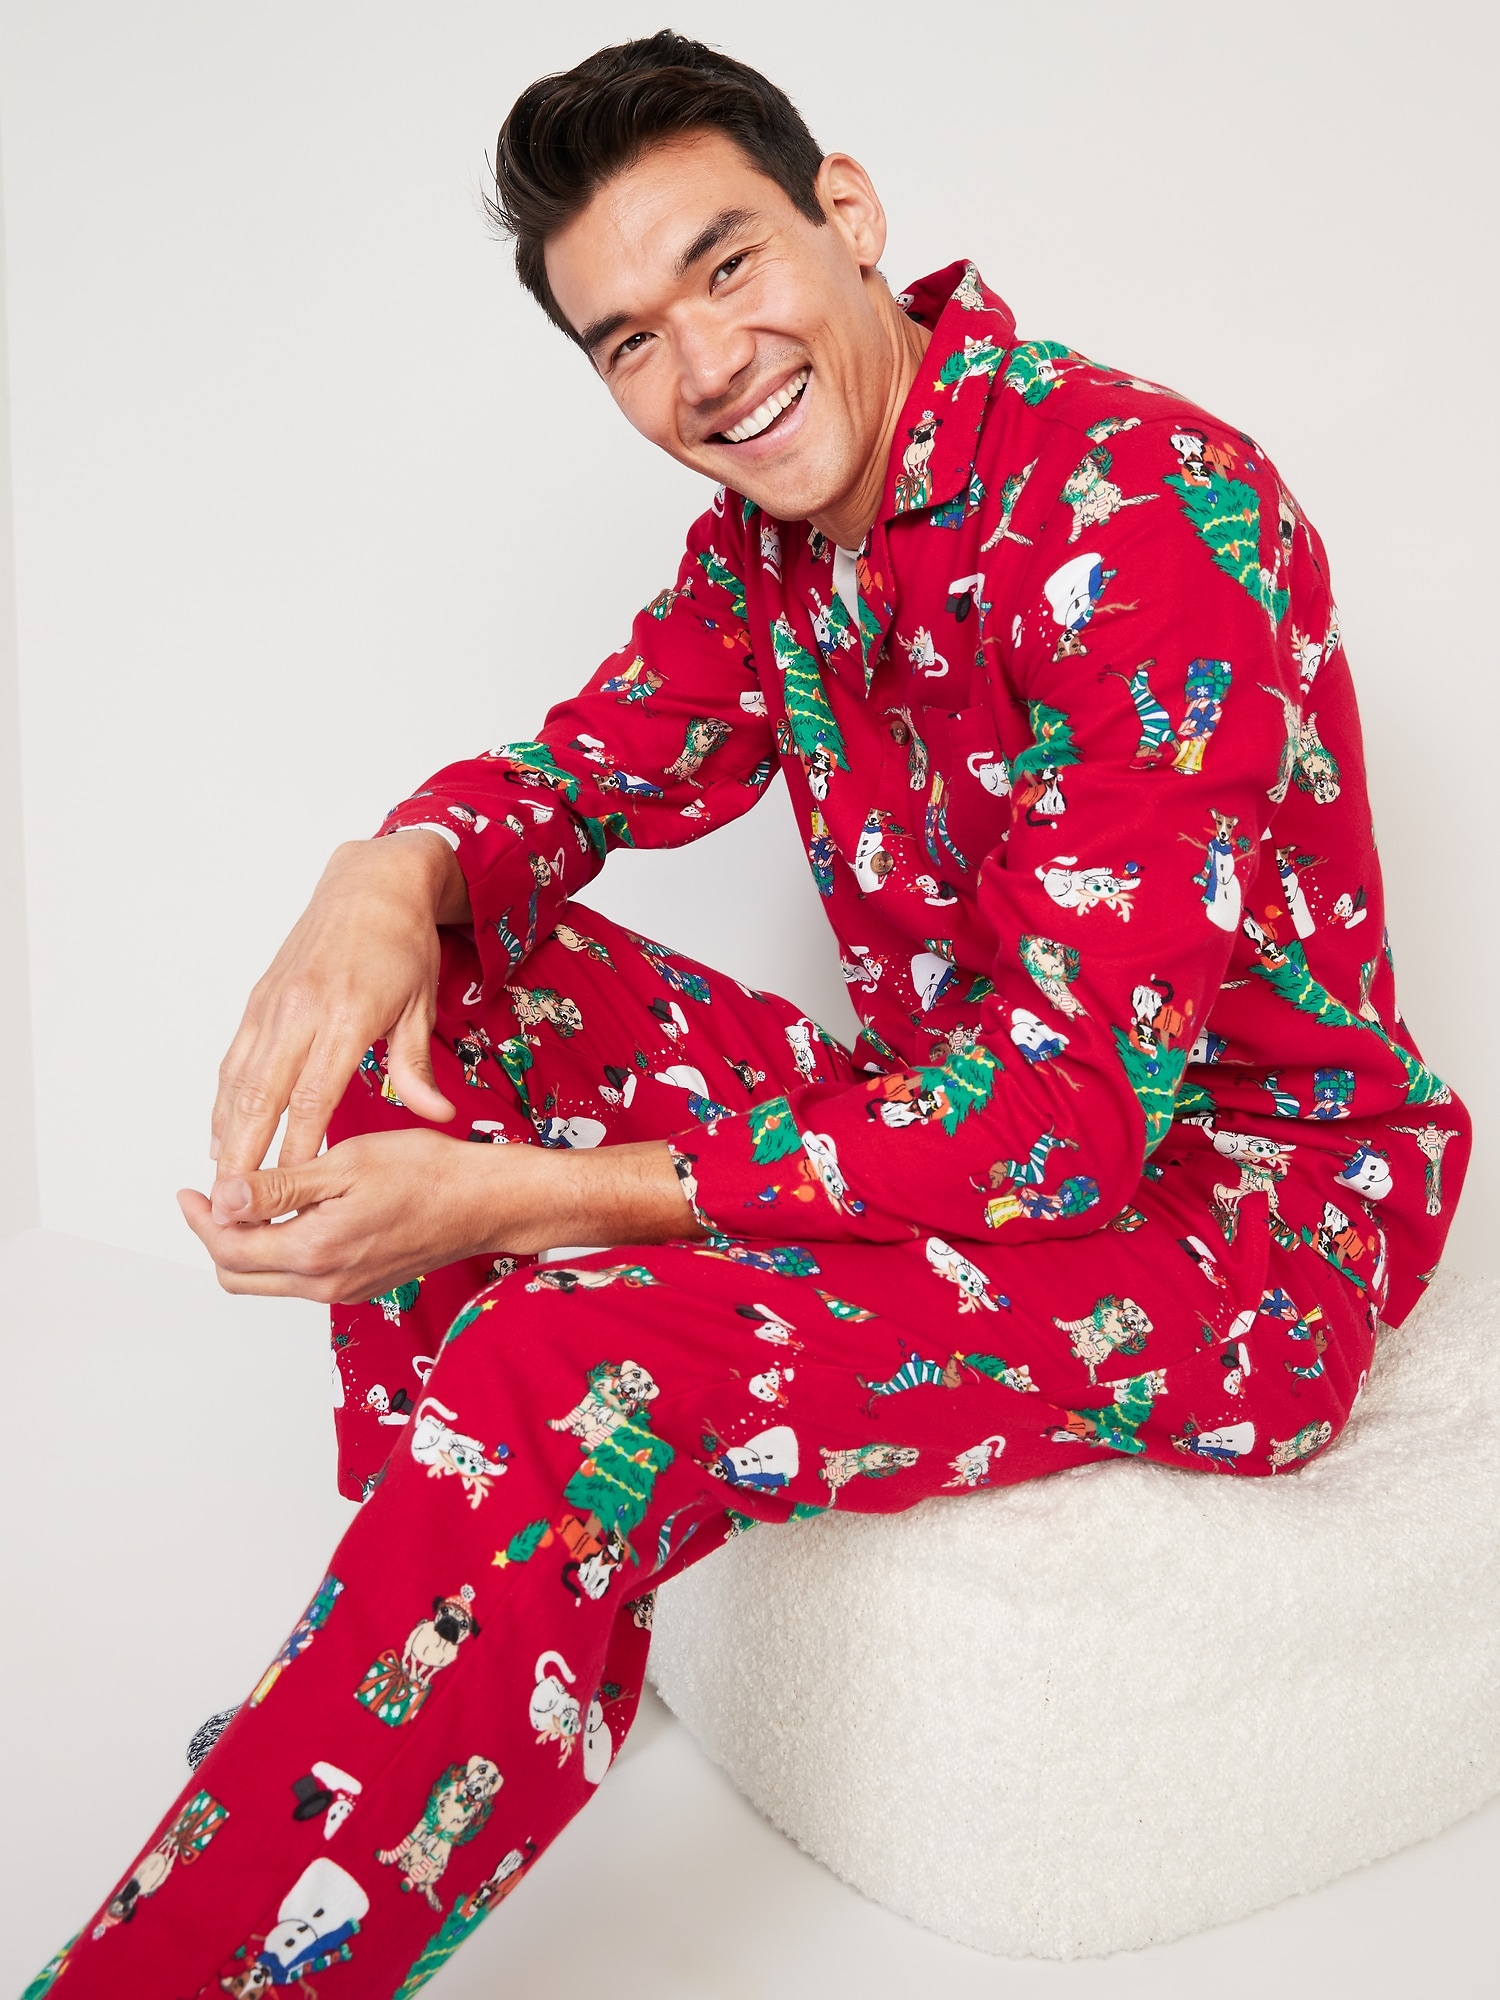 【される】 PajamaGram Matching Pajamas For Couples - Couples Christmas ...